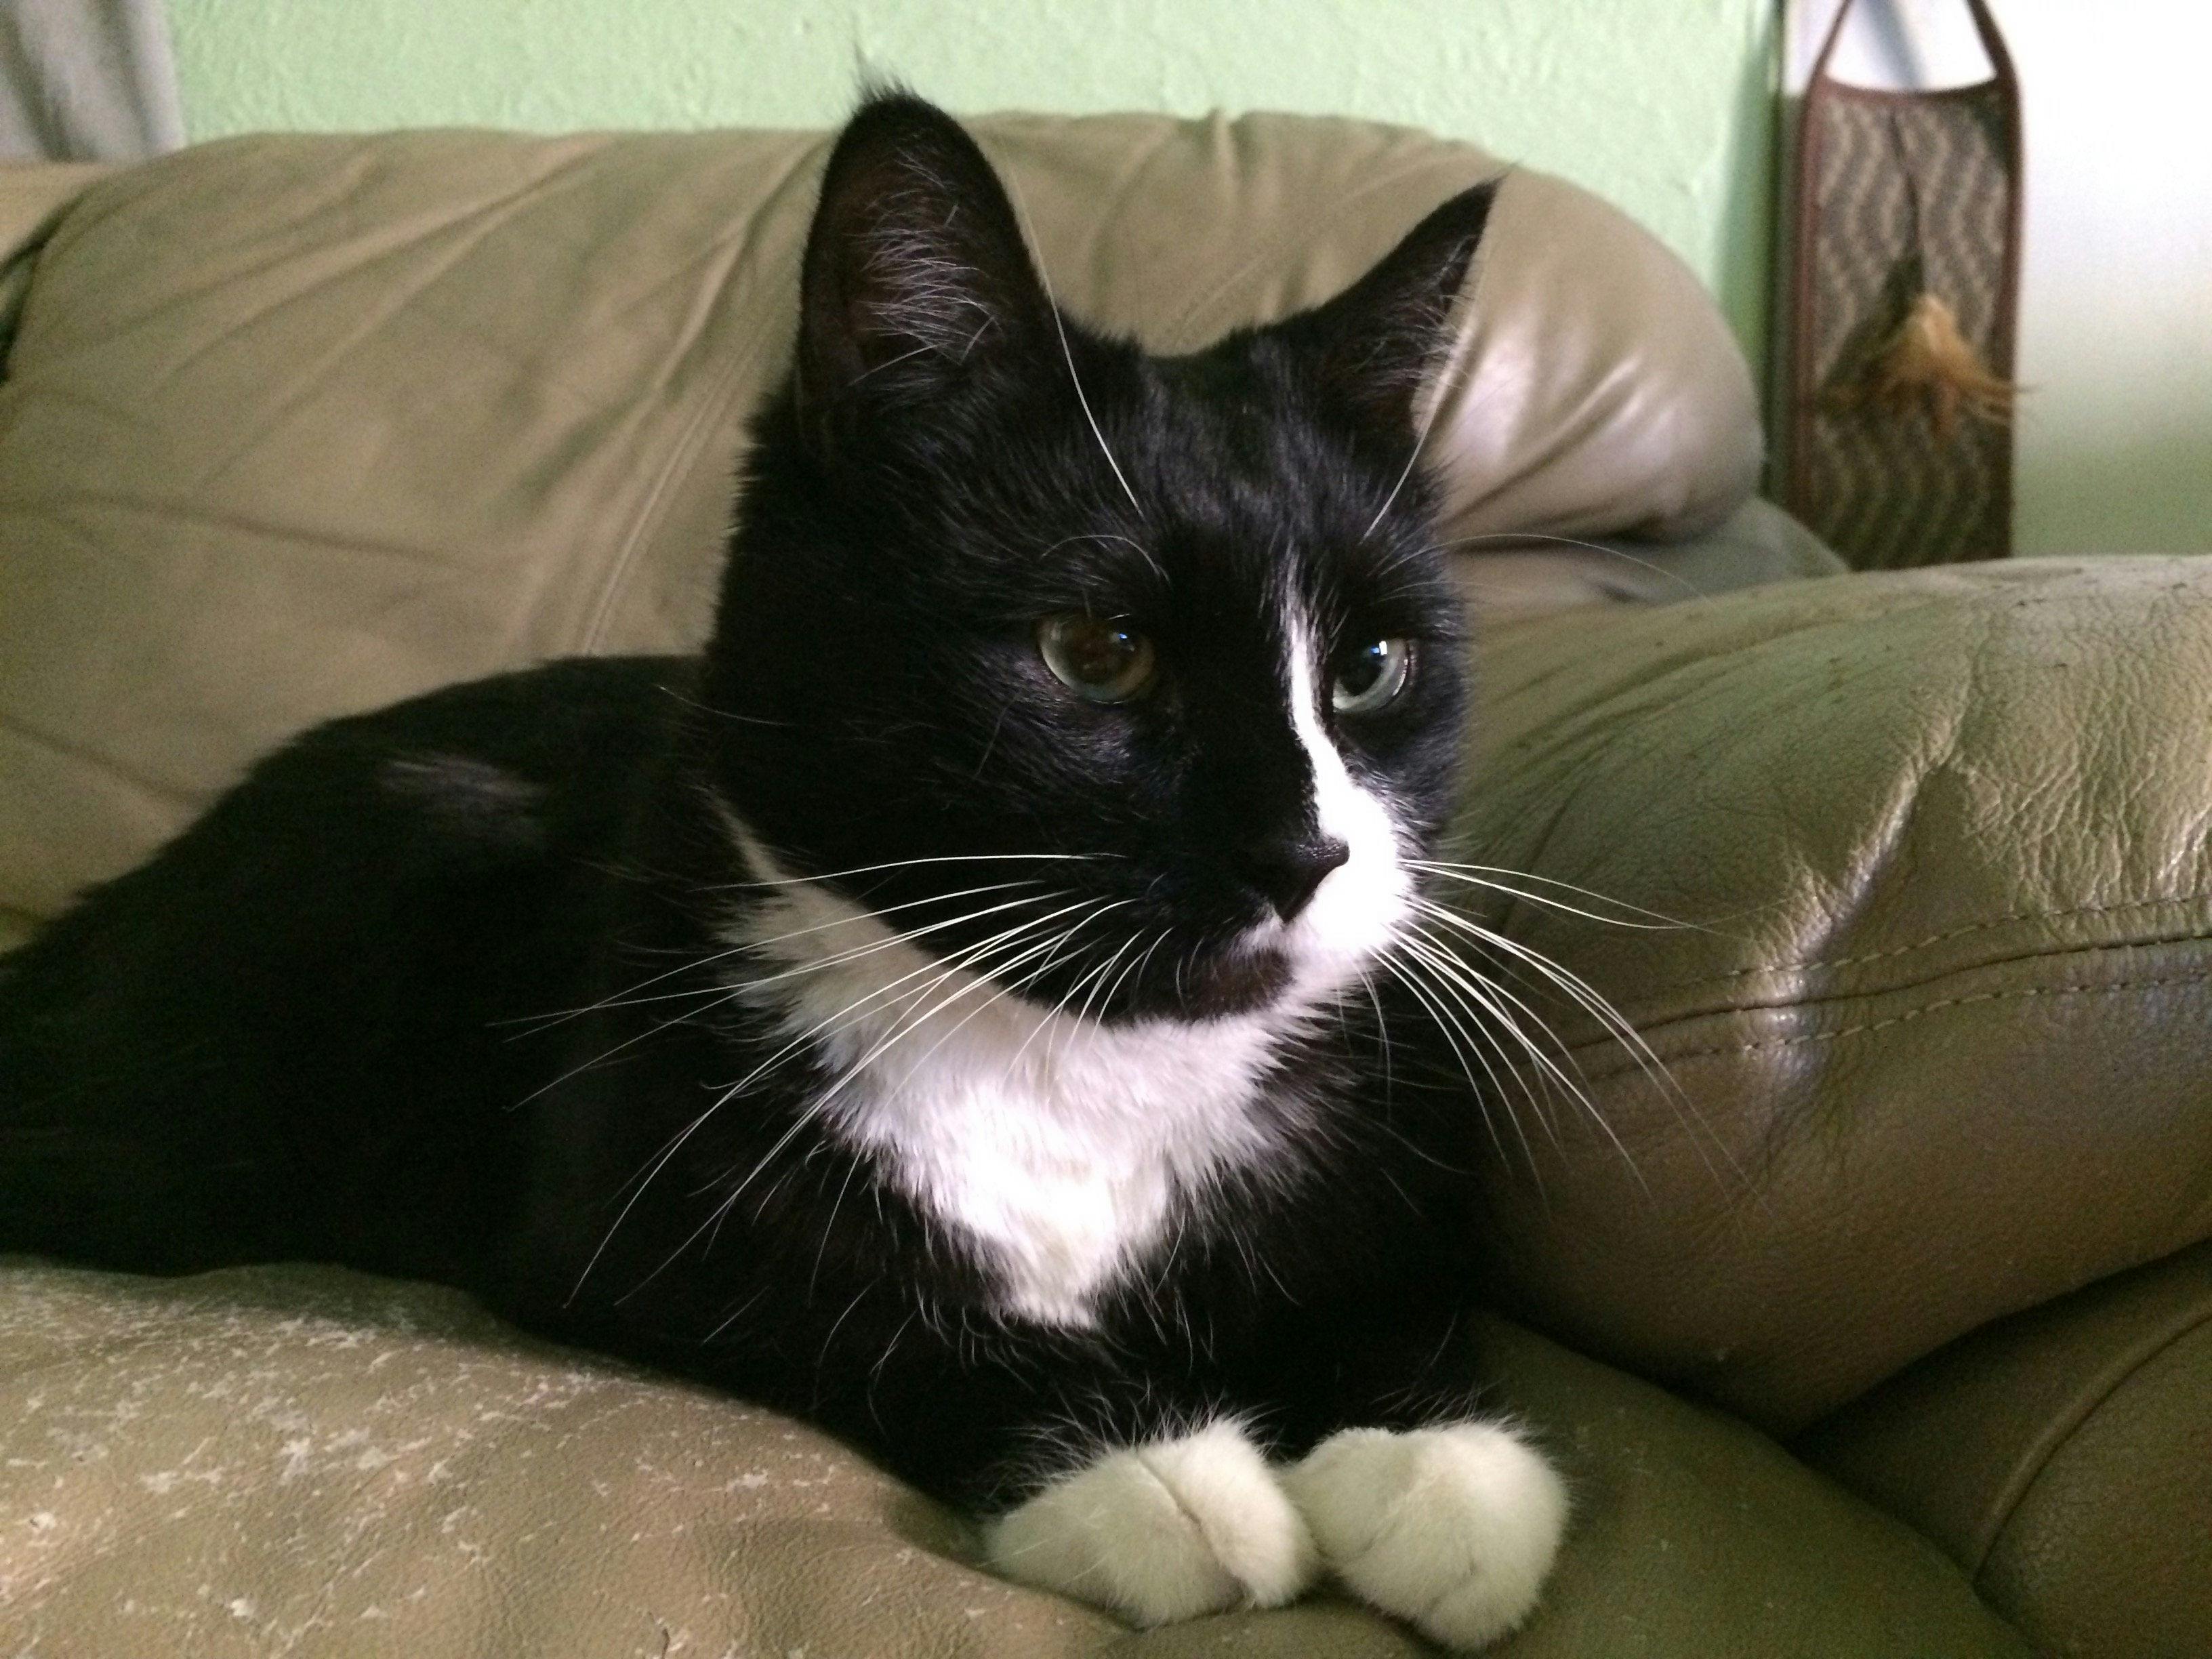 Basepaws Cat Story: Meet Our Little Lark